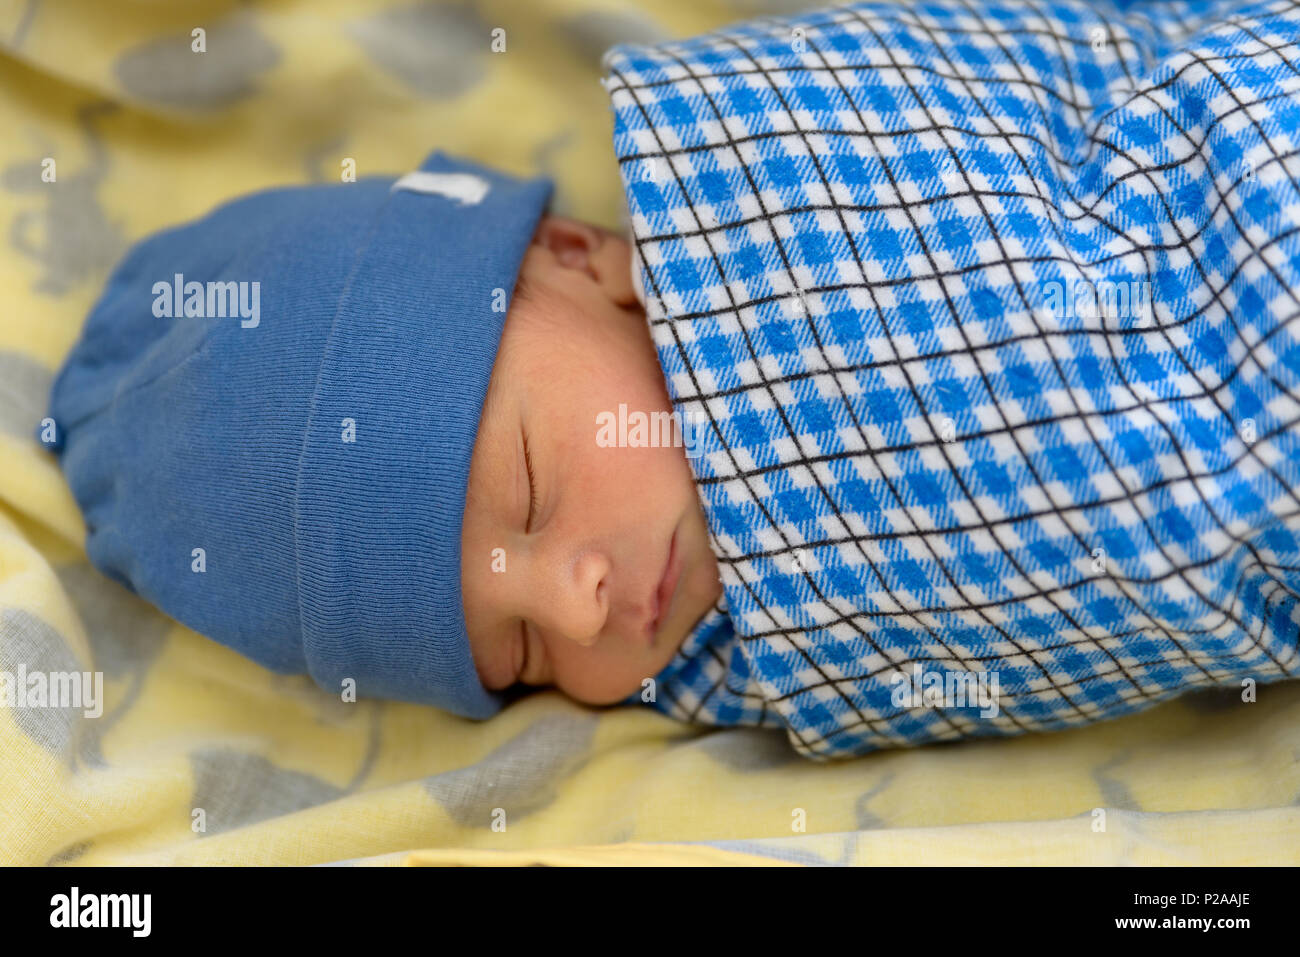 Cute Eurasischen neugeborenes Baby schlafen Stockfoto